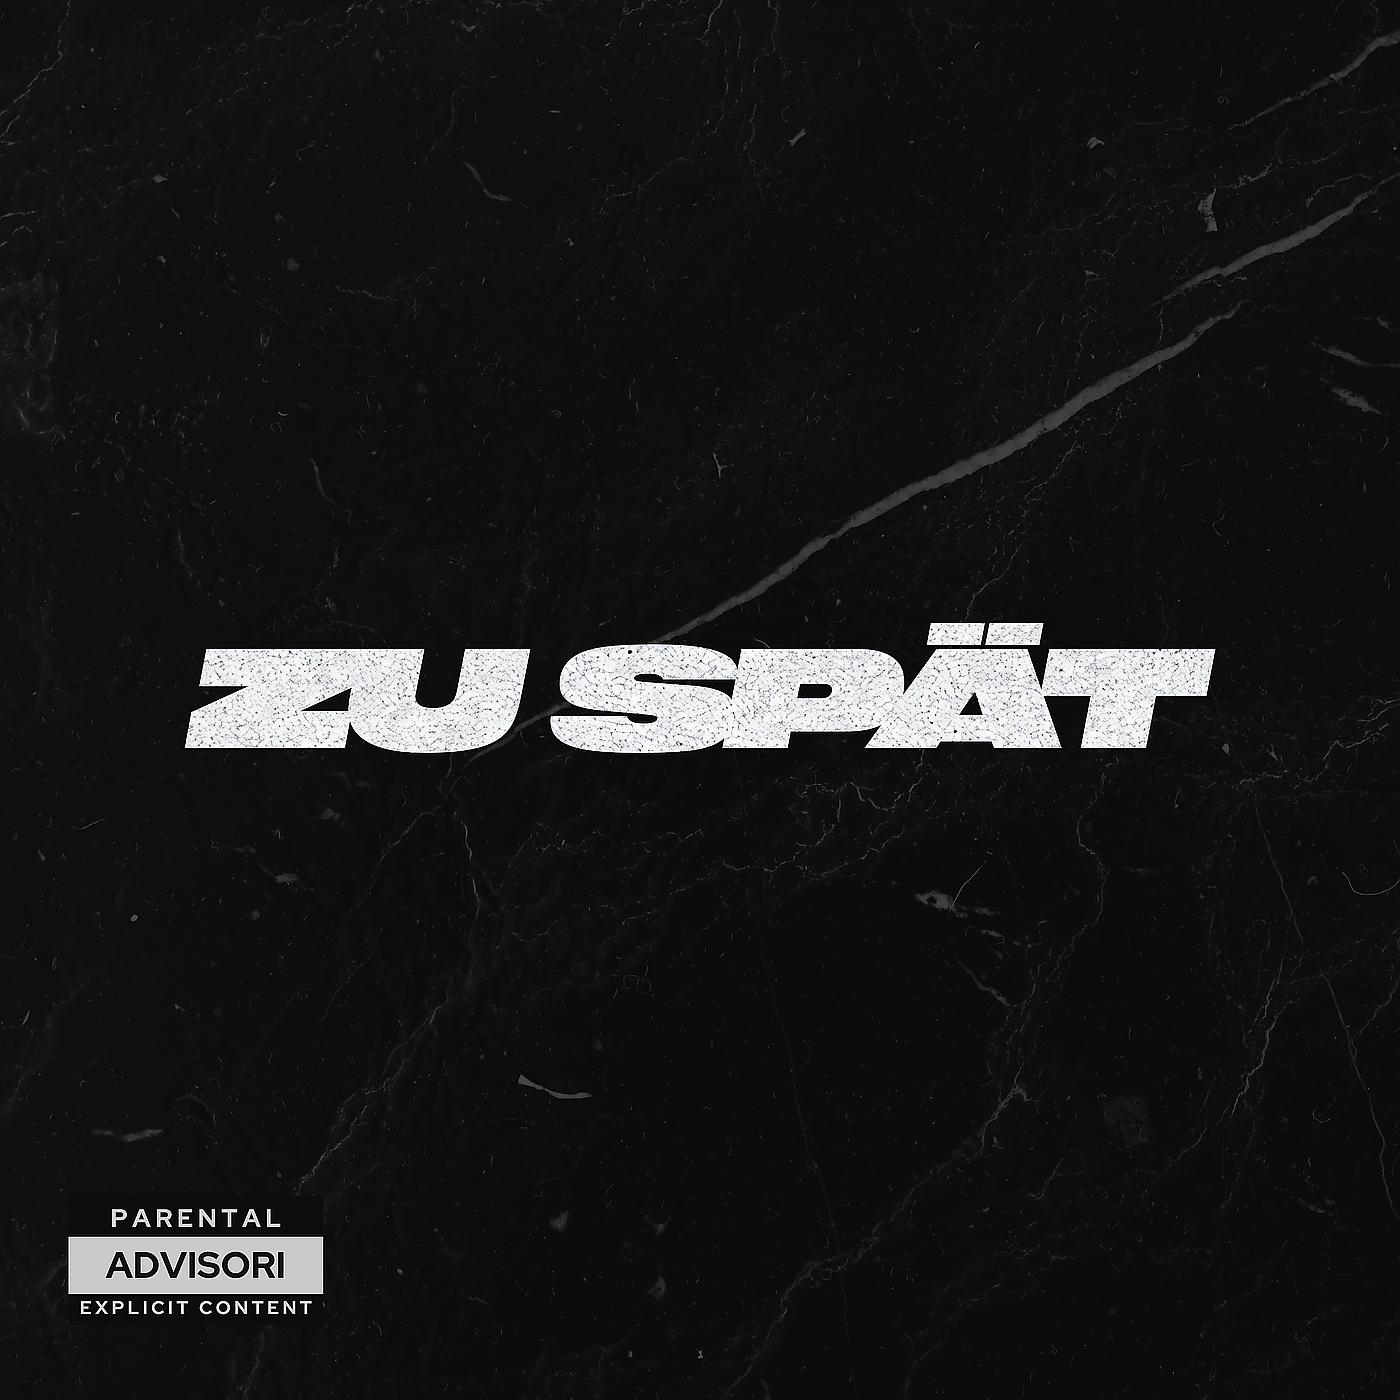 Постер альбома Zu Spät